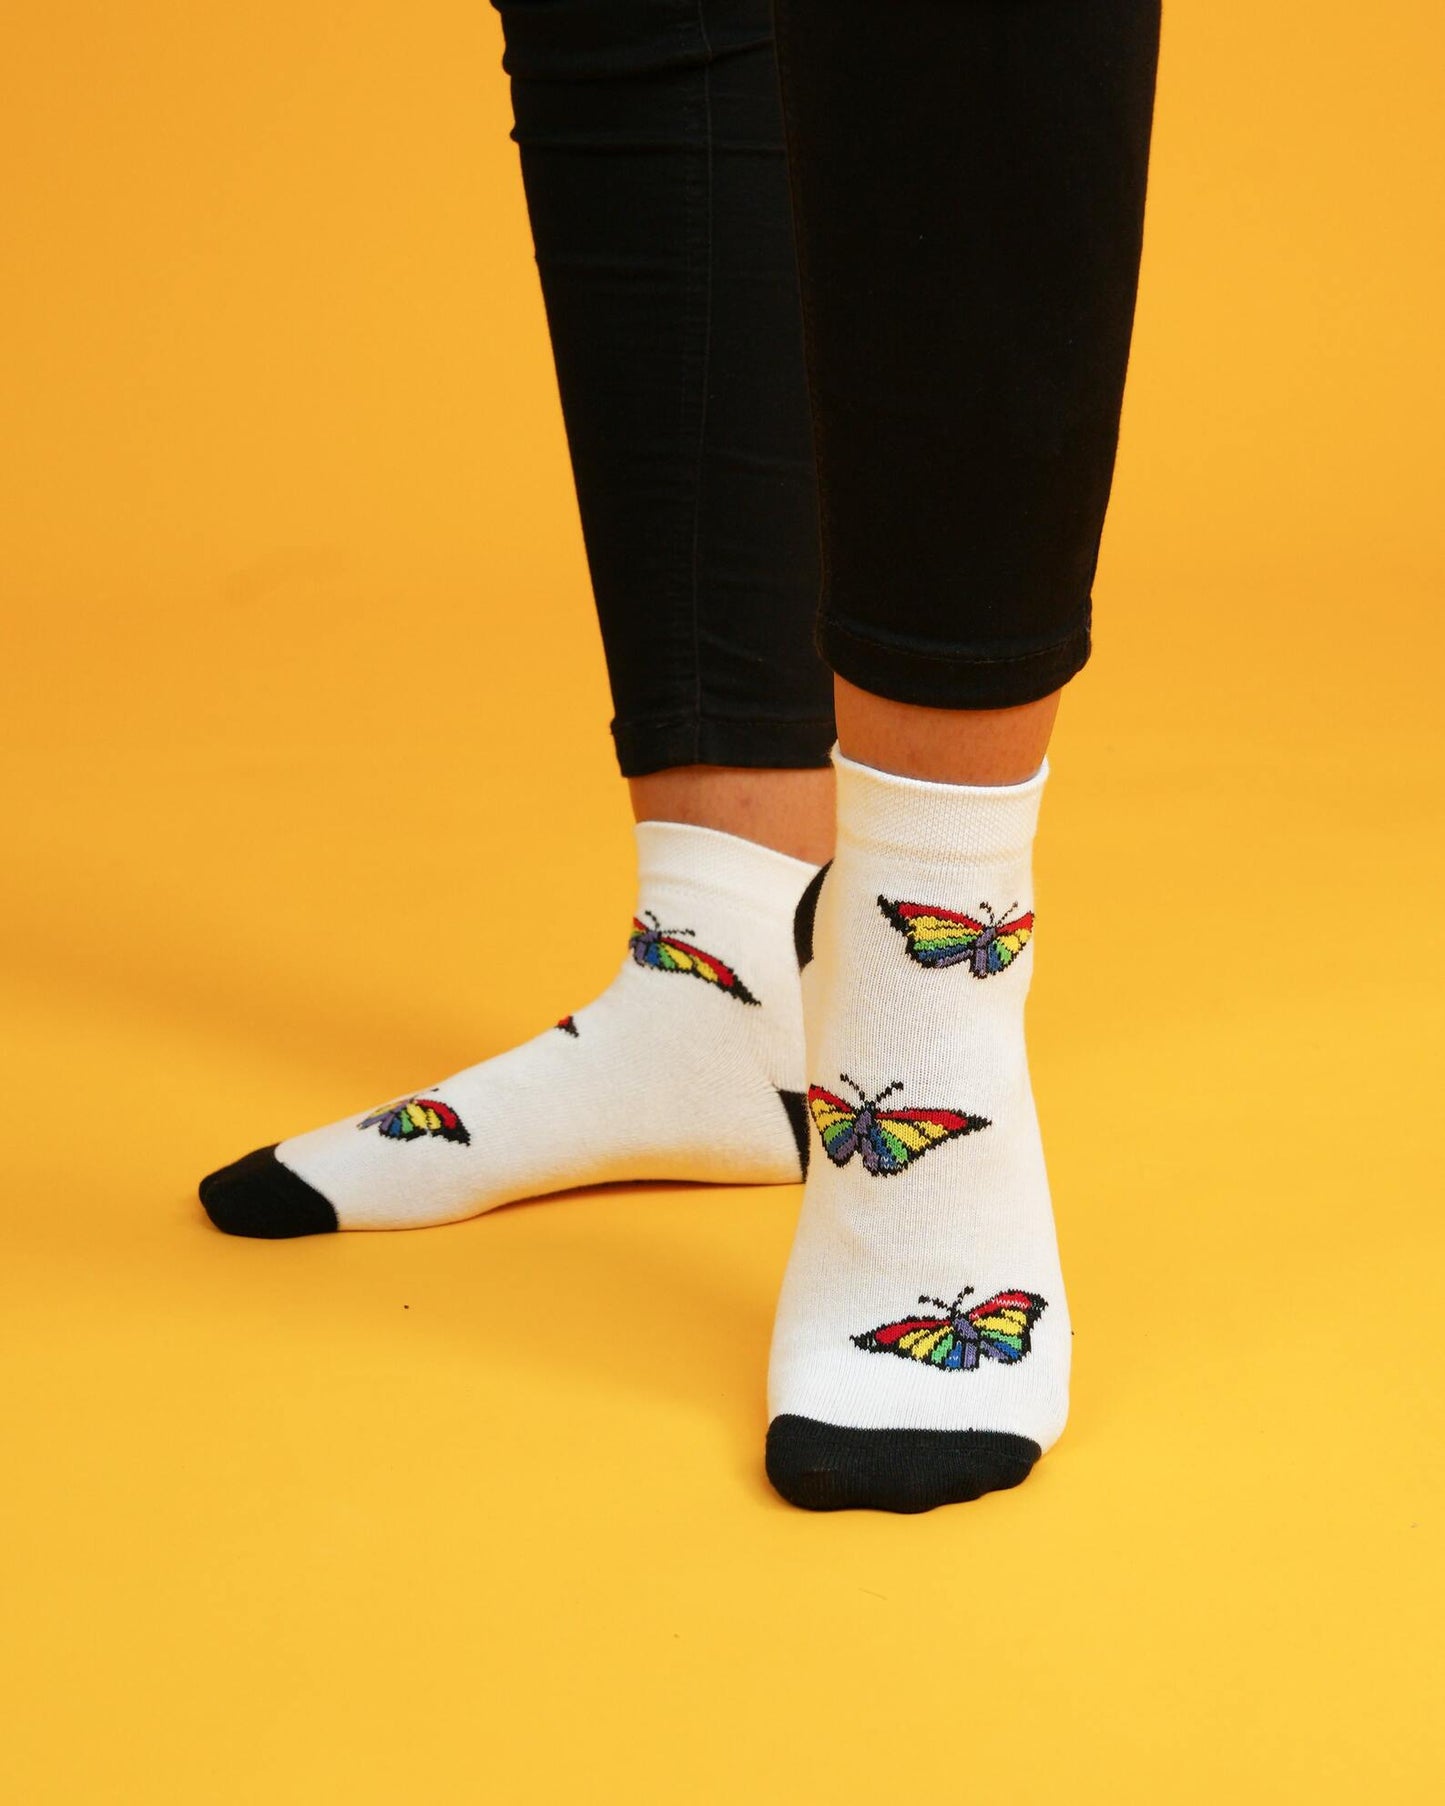 Wingscape Socks